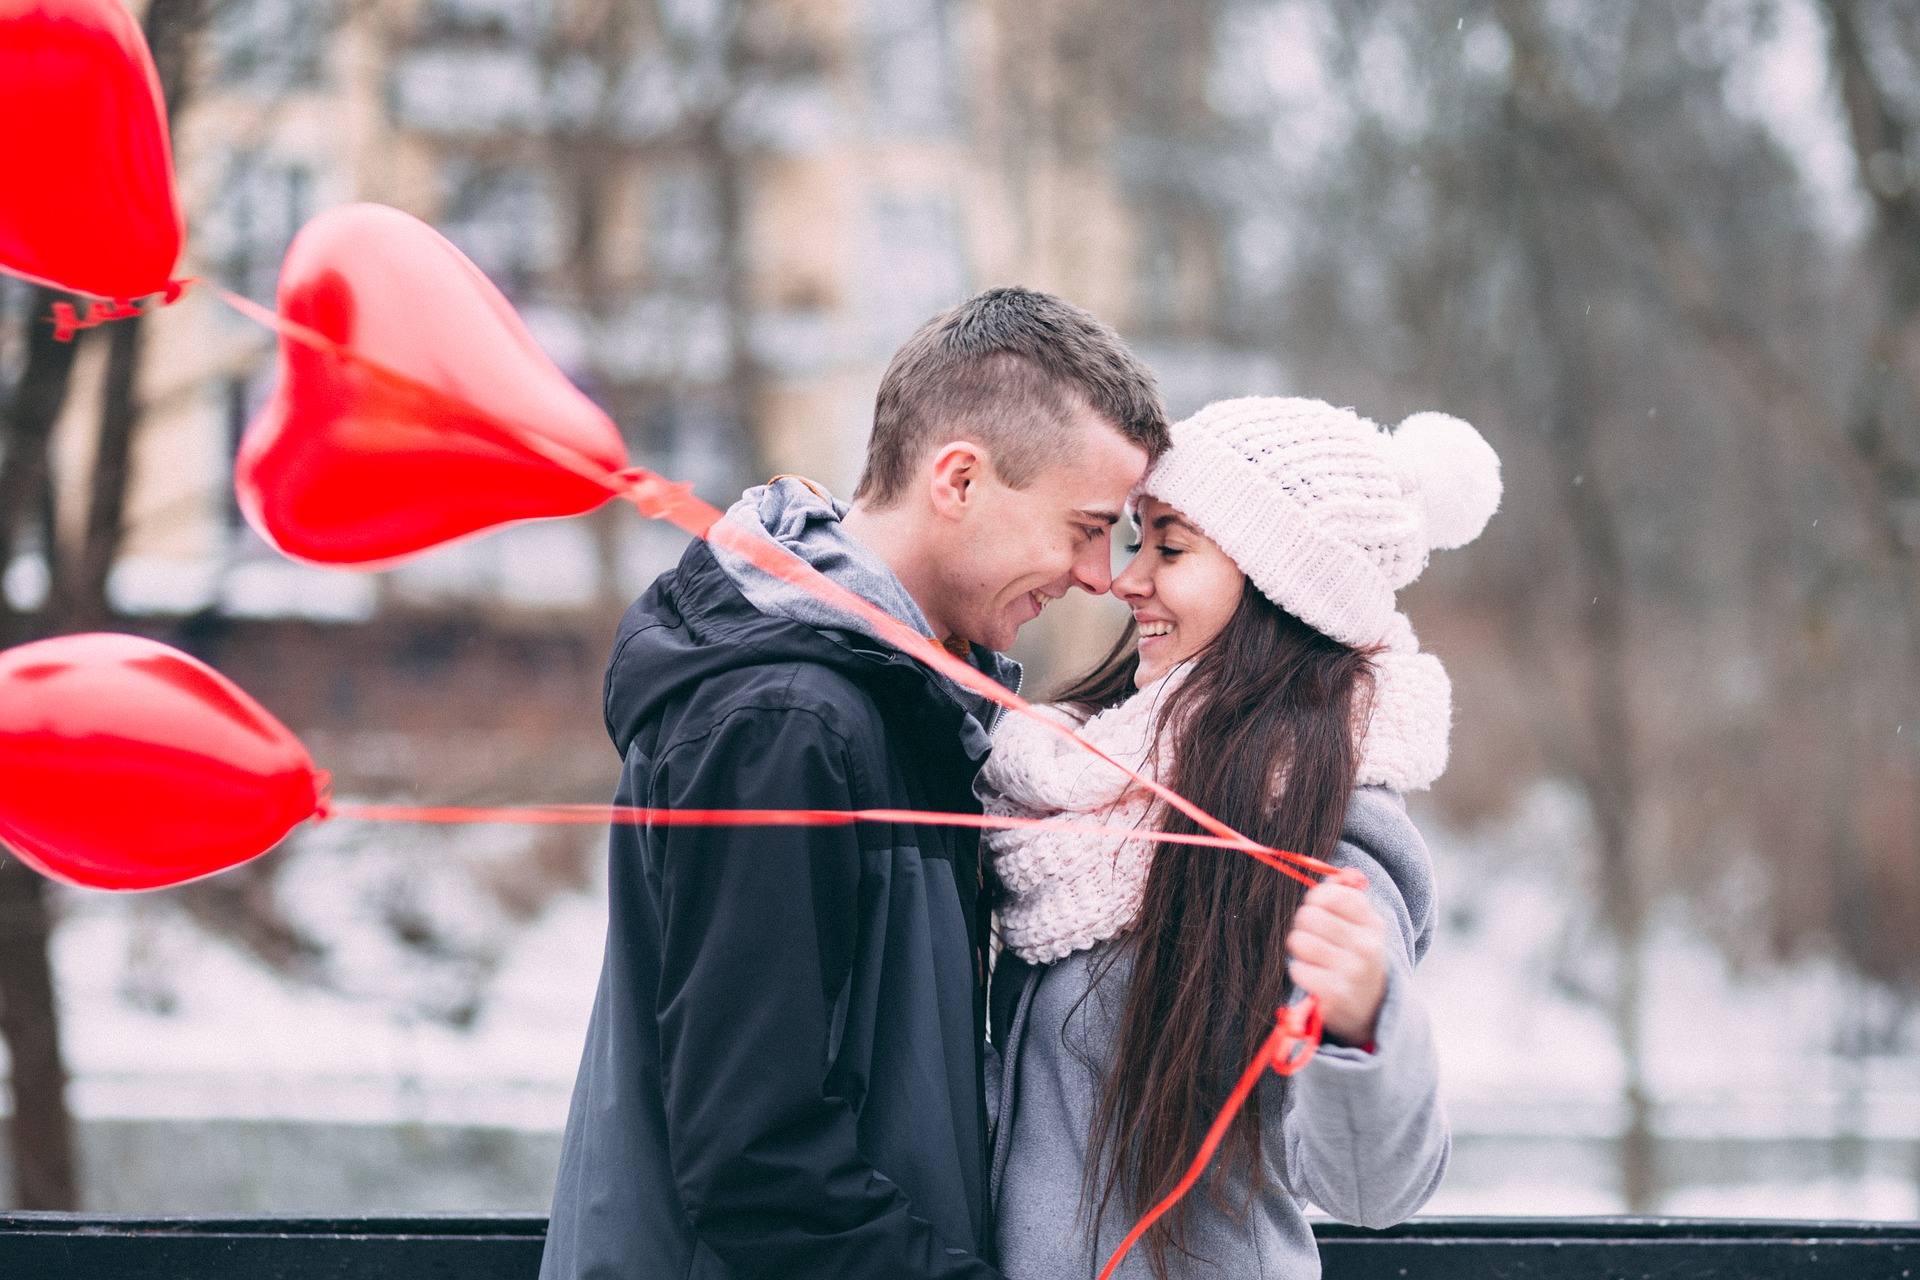 Nauki przedmałżeńskie – 29 marca 2019 (Wrocław)